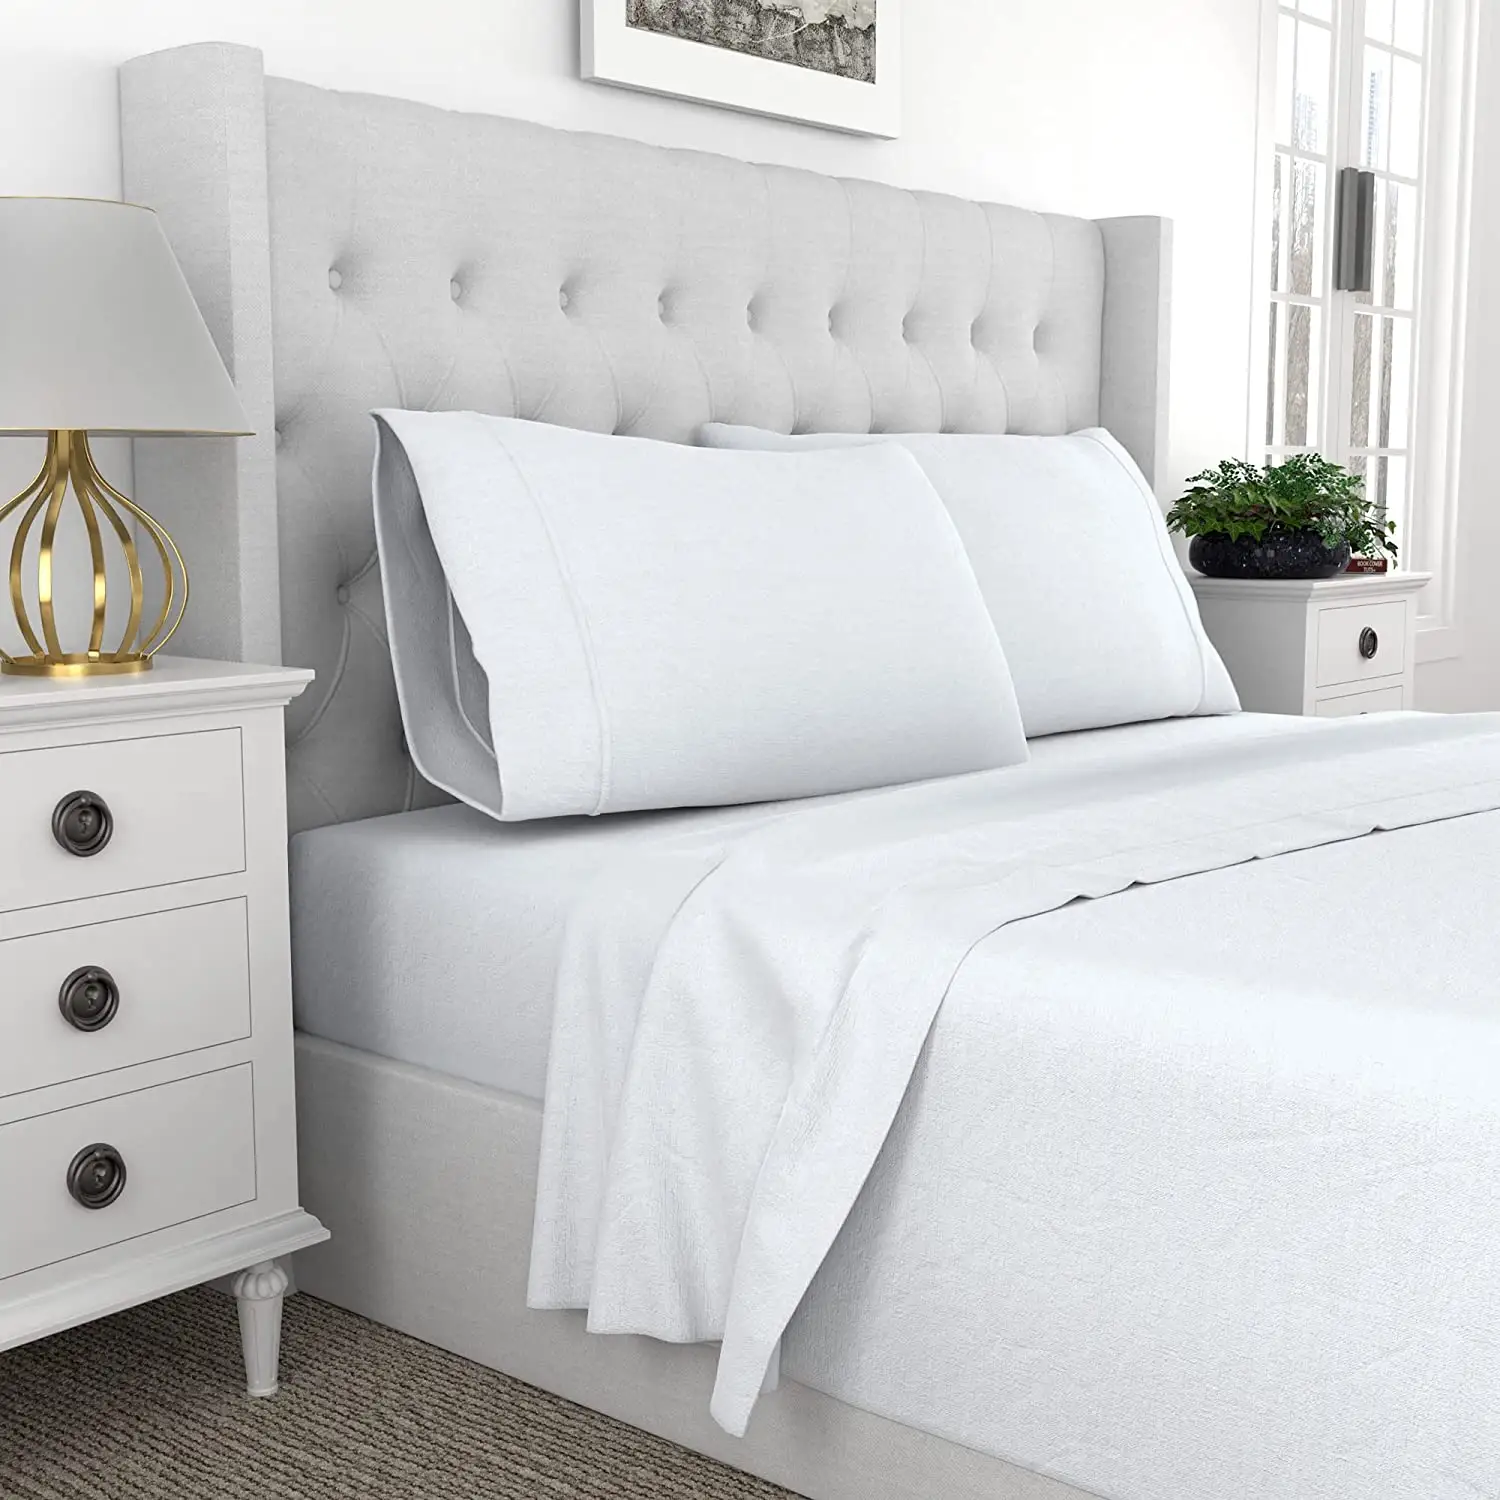 Pamuk lüks otel ev tekstili beyaz yatak takımları yatak çarşafı herhangi bir boyut mevcut çarşaf nevresim takımları